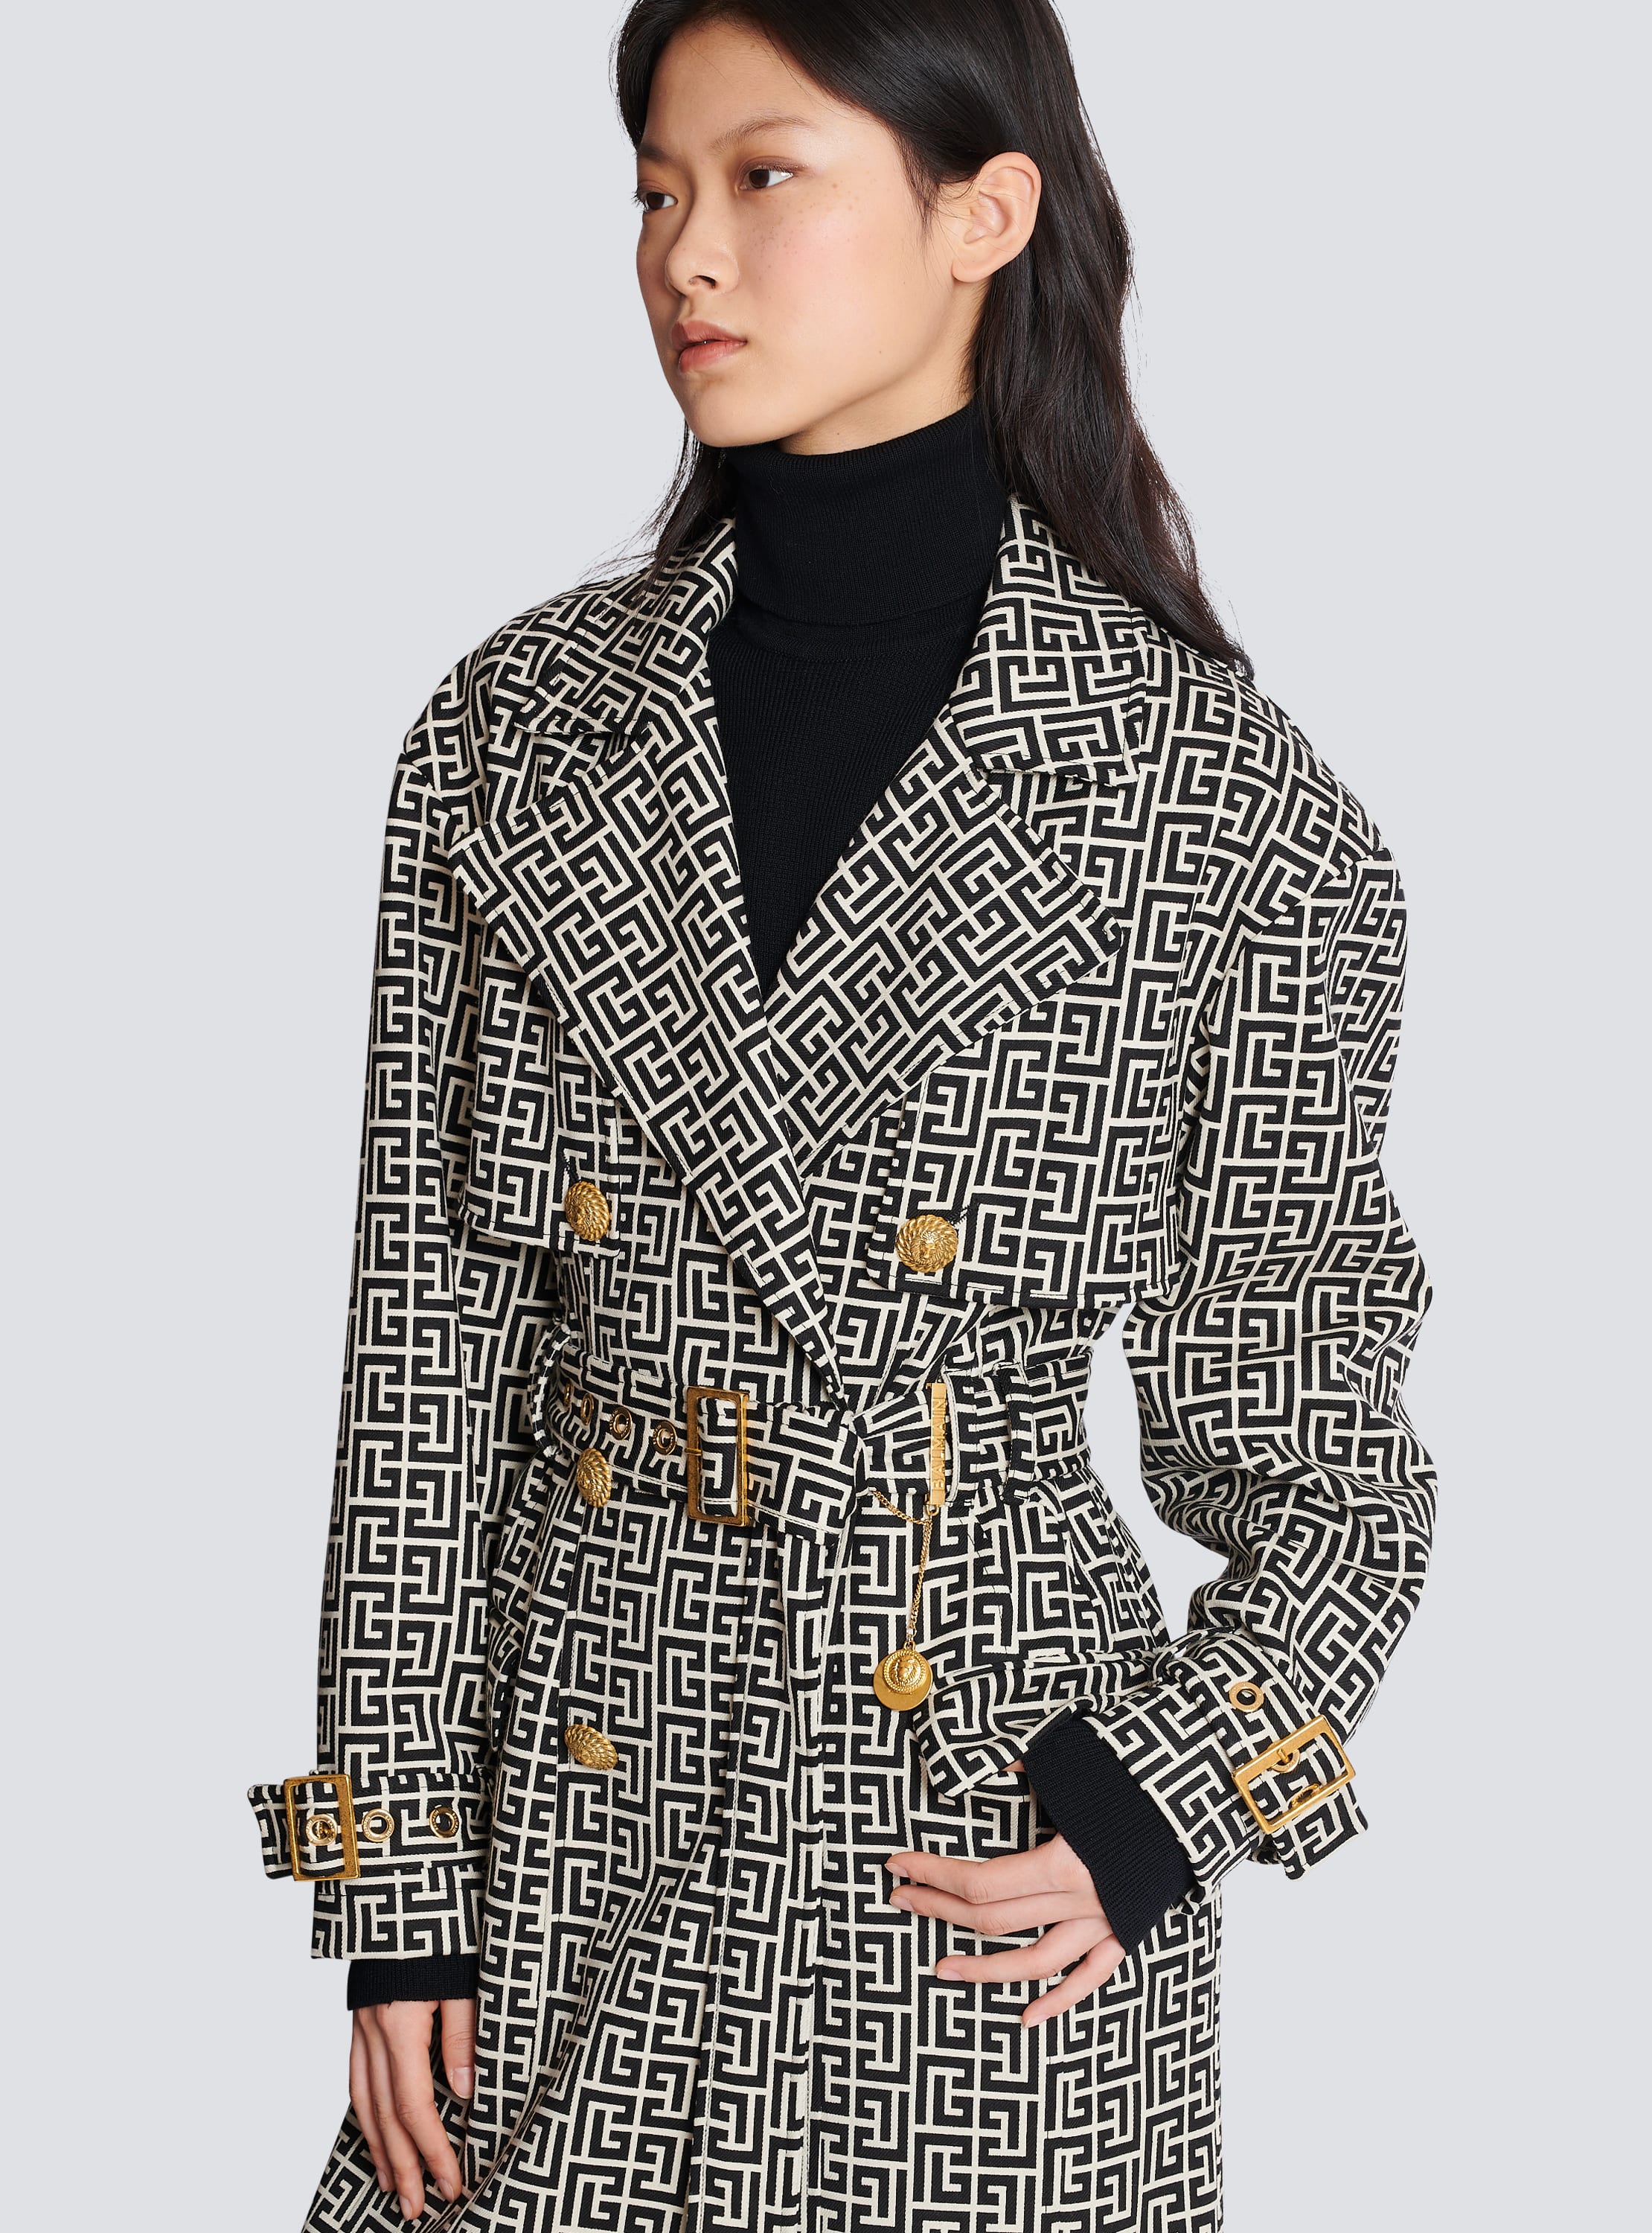 Short coats Balmain - Mini monogram trench coat - BF0TL058CE44WFP